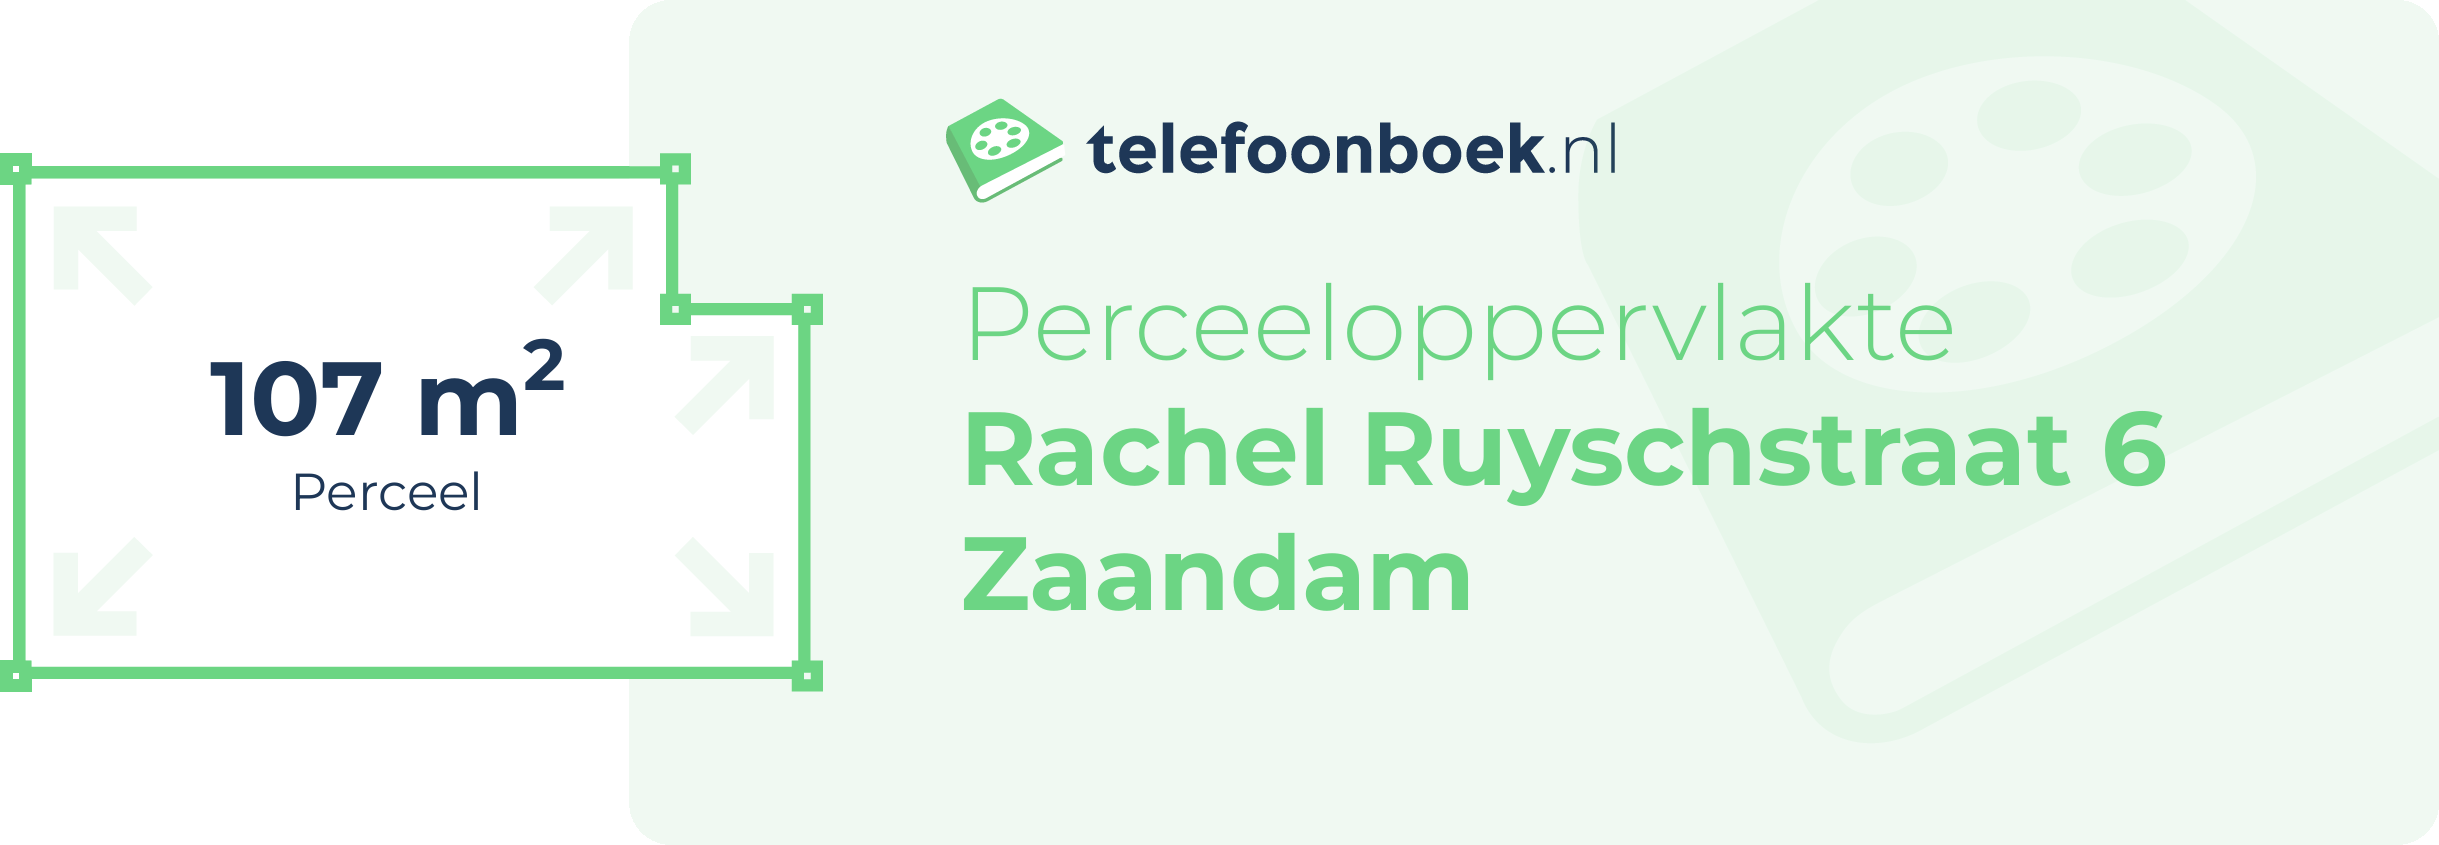 Perceeloppervlakte Rachel Ruyschstraat 6 Zaandam